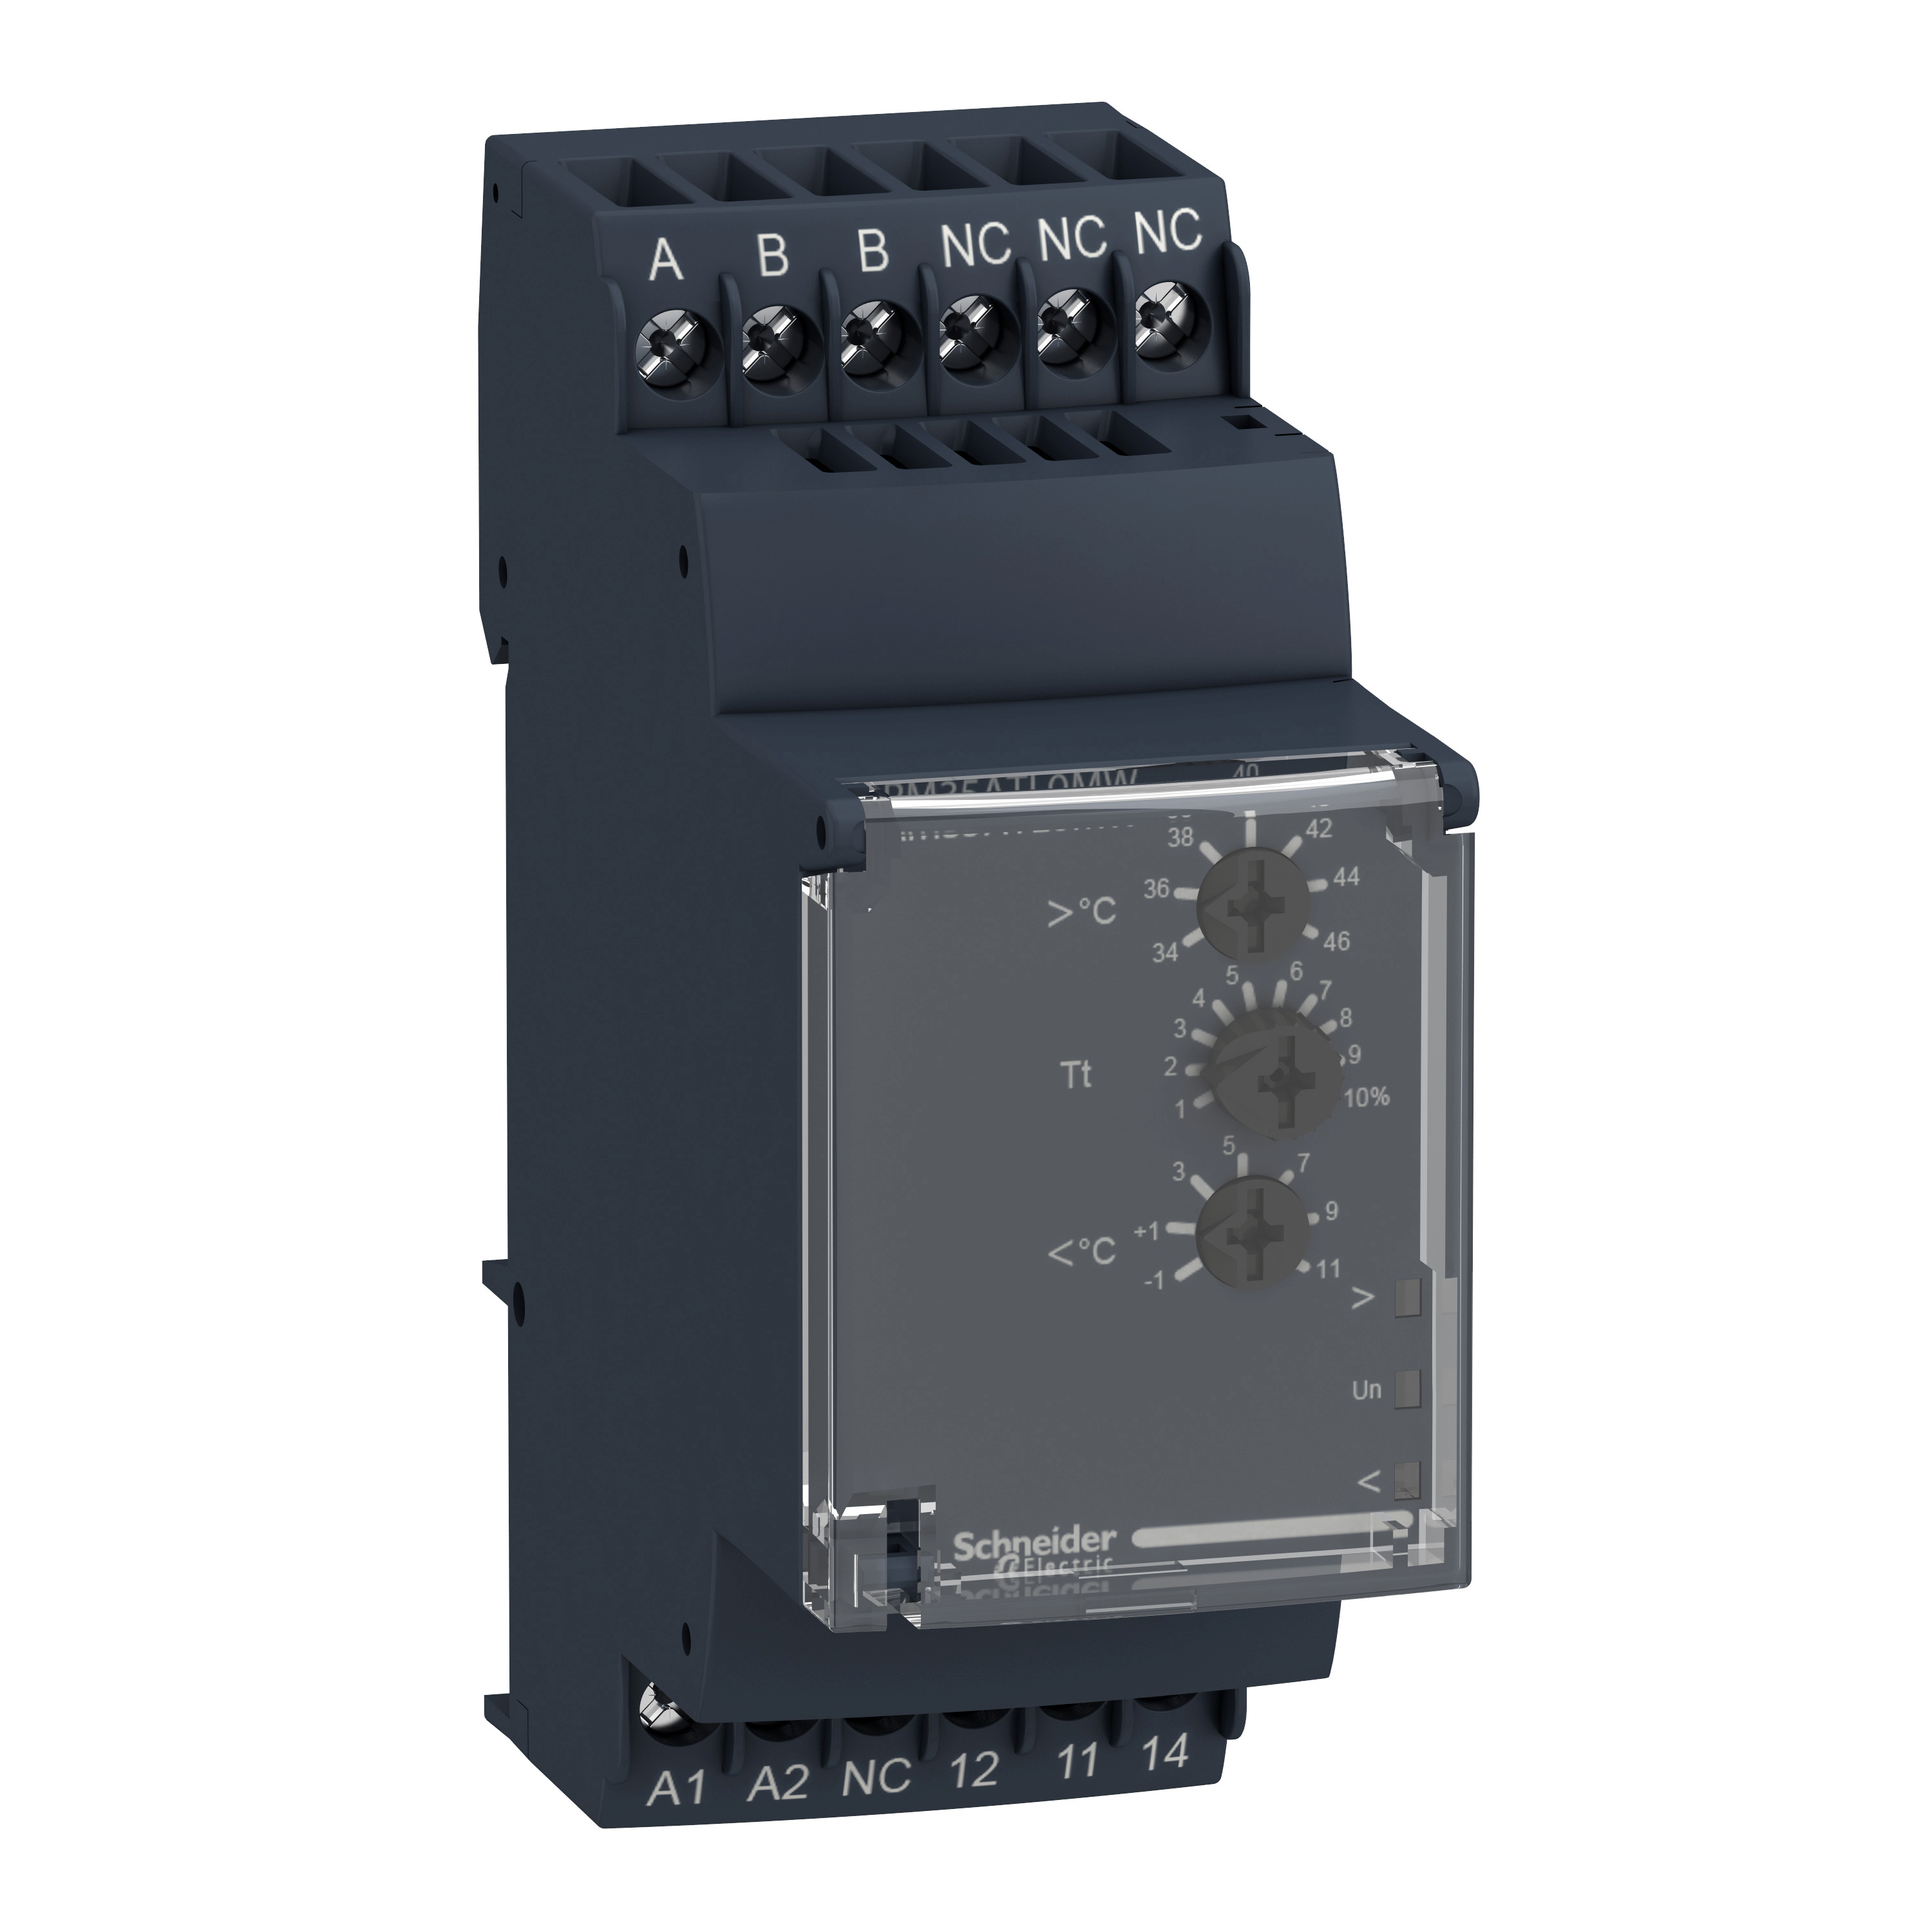 Zelio Control RM35: SPECIJALNO modularno rele za kontrolu nivoa (min-max), 1C/O, 5A, vremensko zatezanje 0,1....5s, 24...240V AC/DC, detekcija senzorima(nisu obuhvaceni)